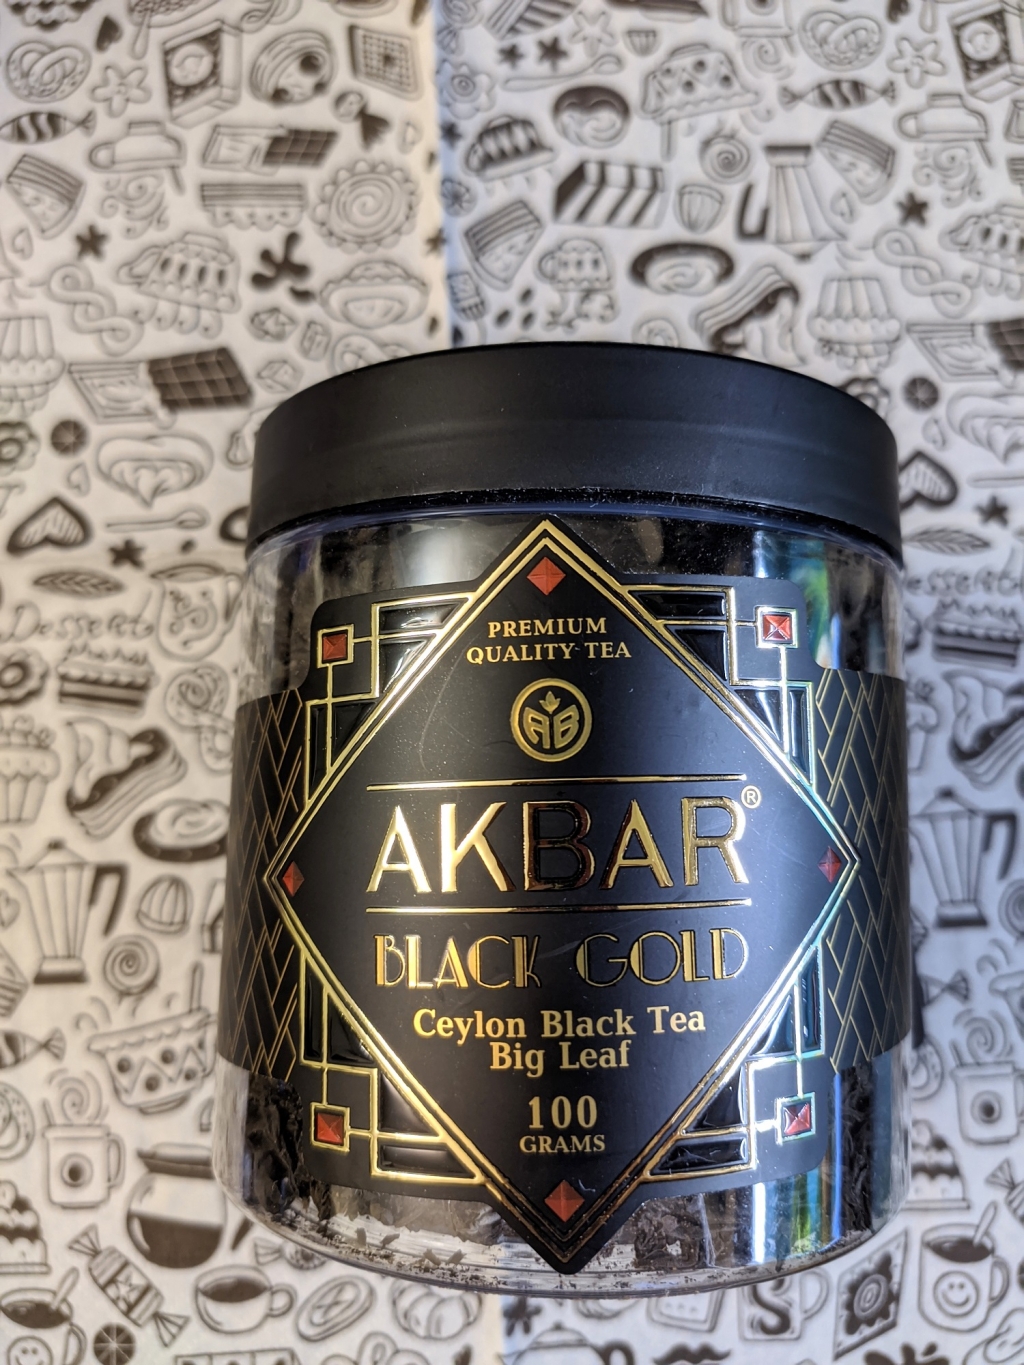 Akbar Black Gold крупнолистовой черный чай, 100 г - Хороший листовой чай от Акбар